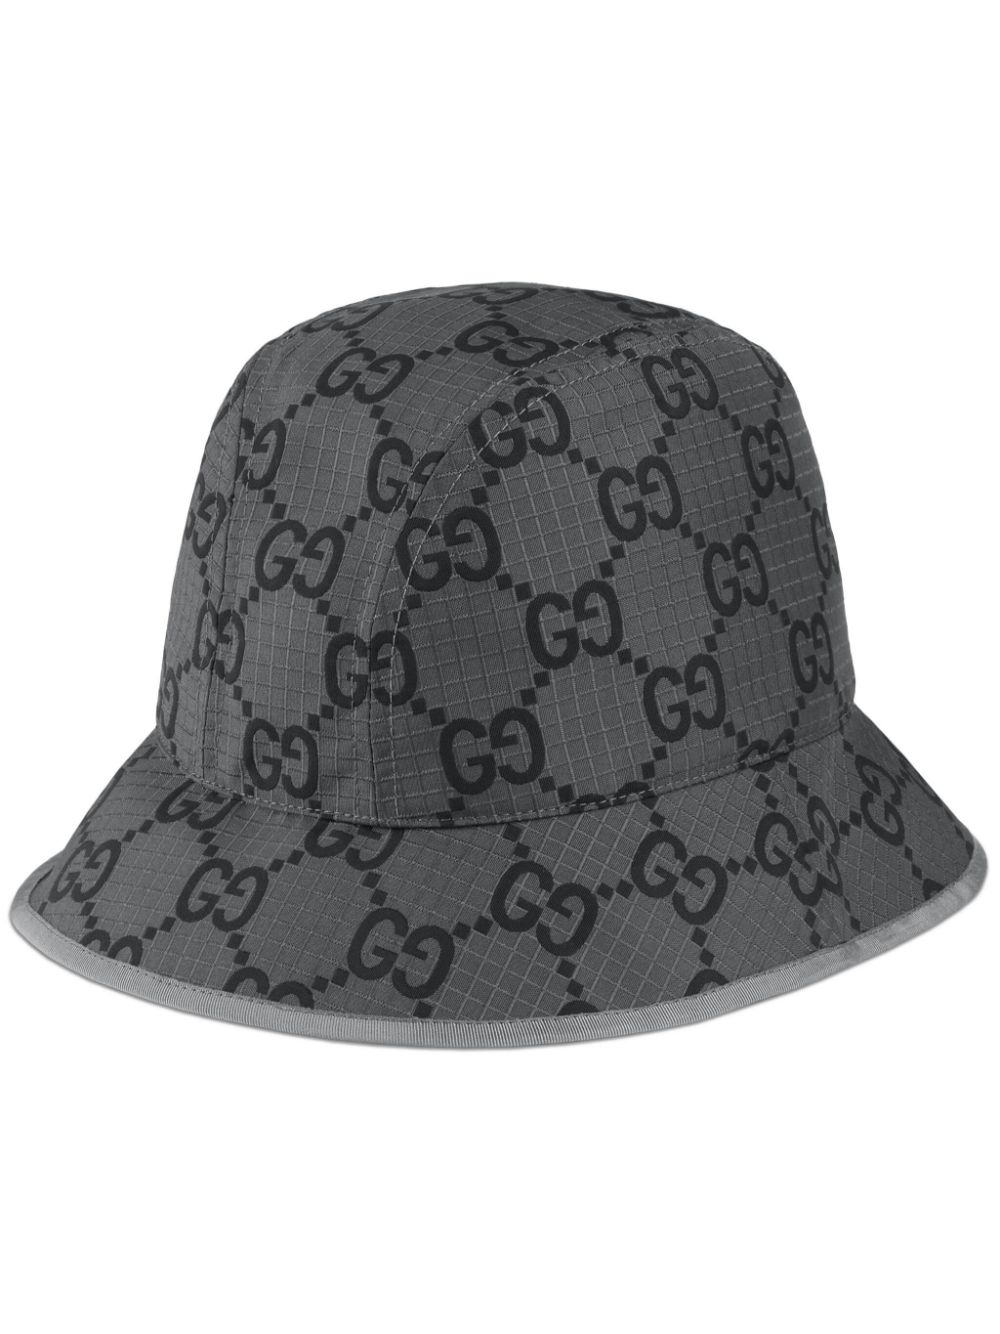 Gucci GG Canvas Bucket Hat - Farfetch